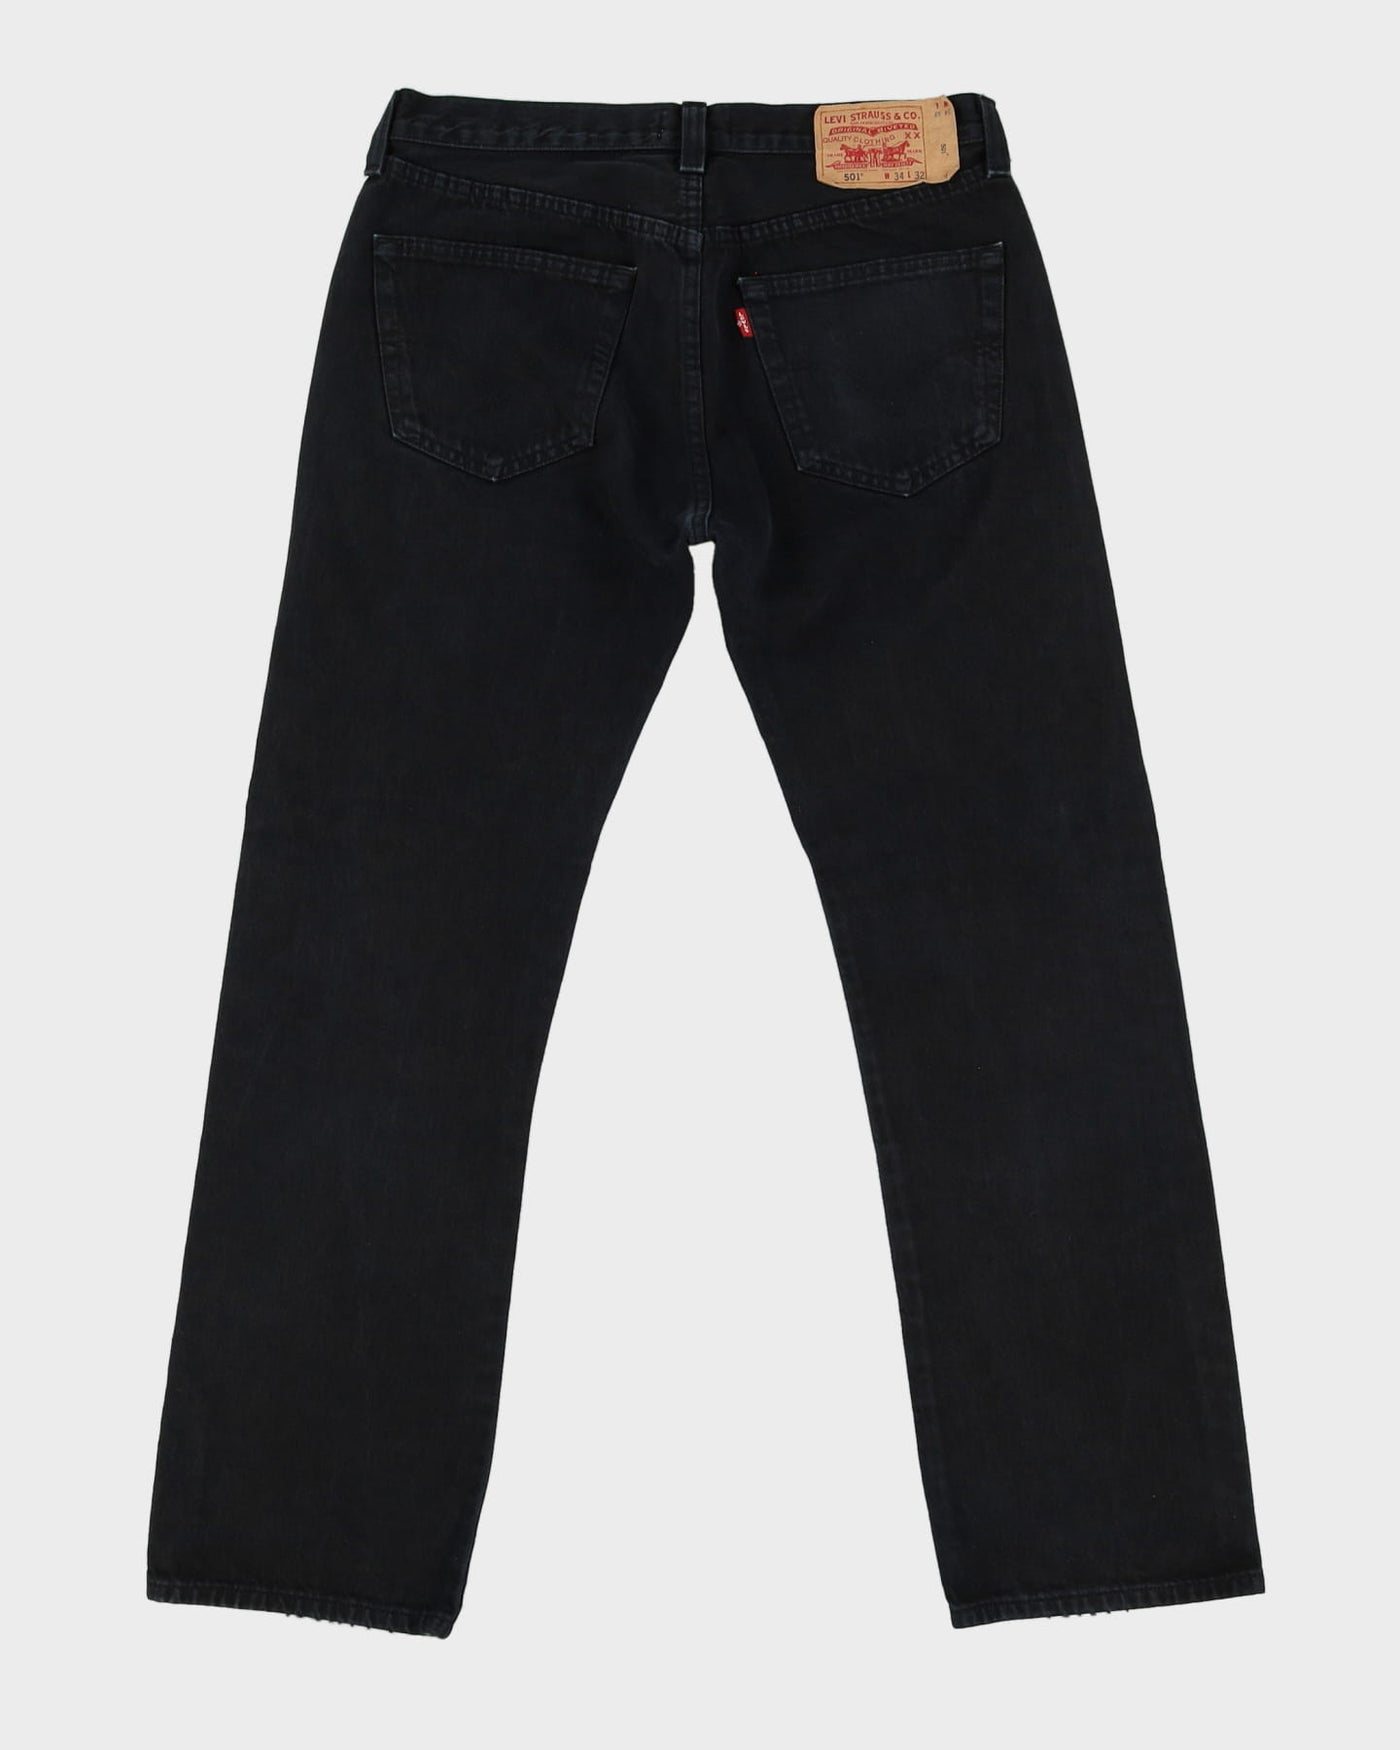 Levi's 501 Dark Wash Black Jeans - W34 L31